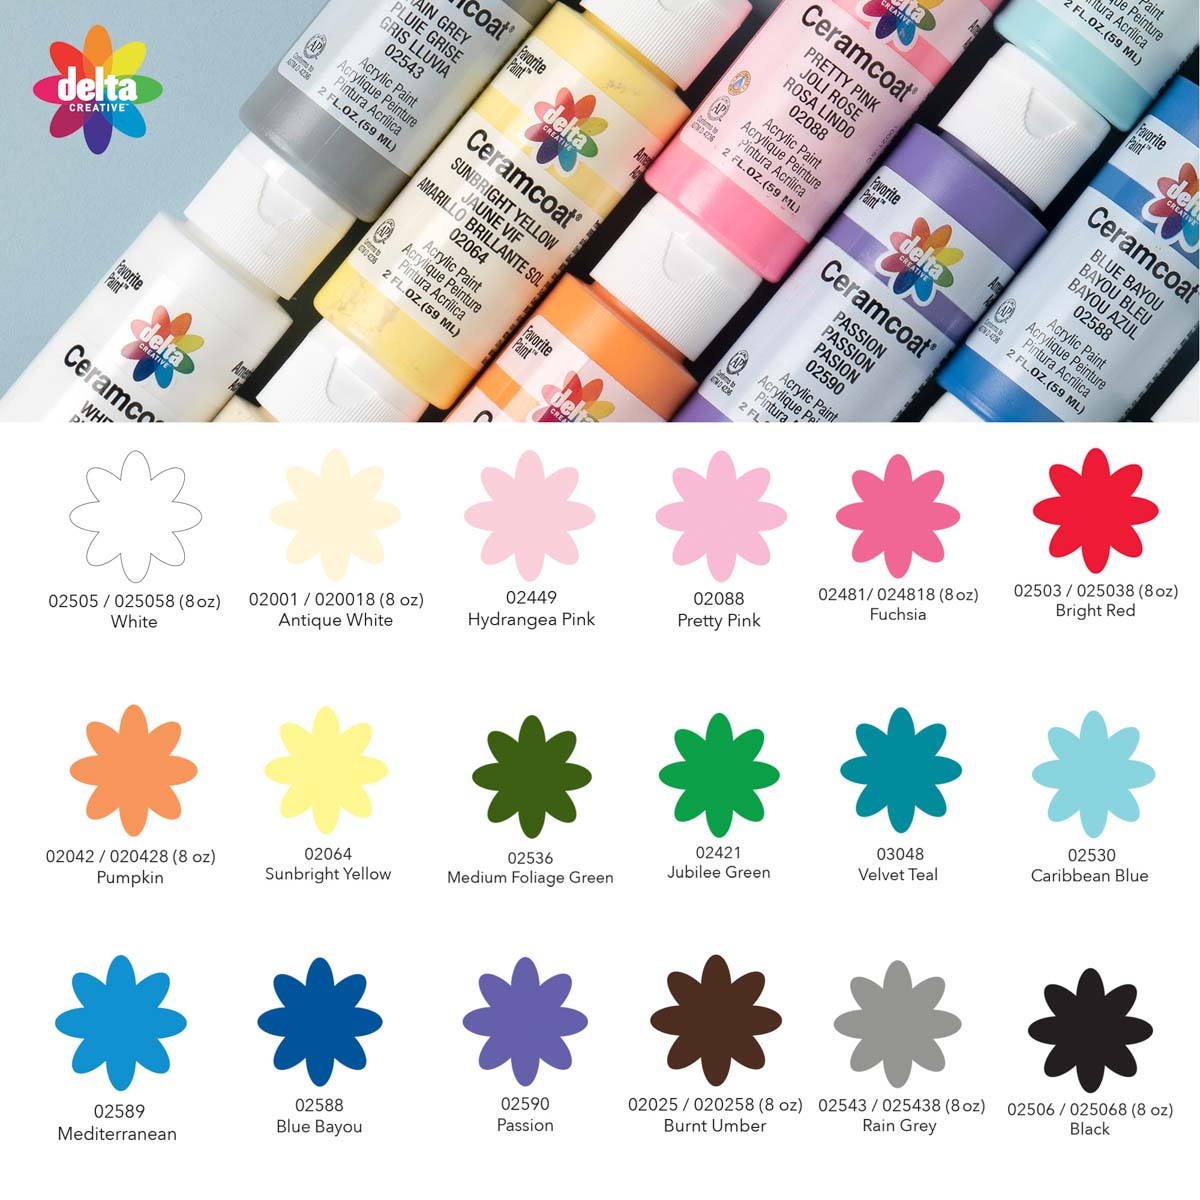 Delta Ceramcoat ® Paint Sets - Top Colors, 18 Colors - PROMOCMC1